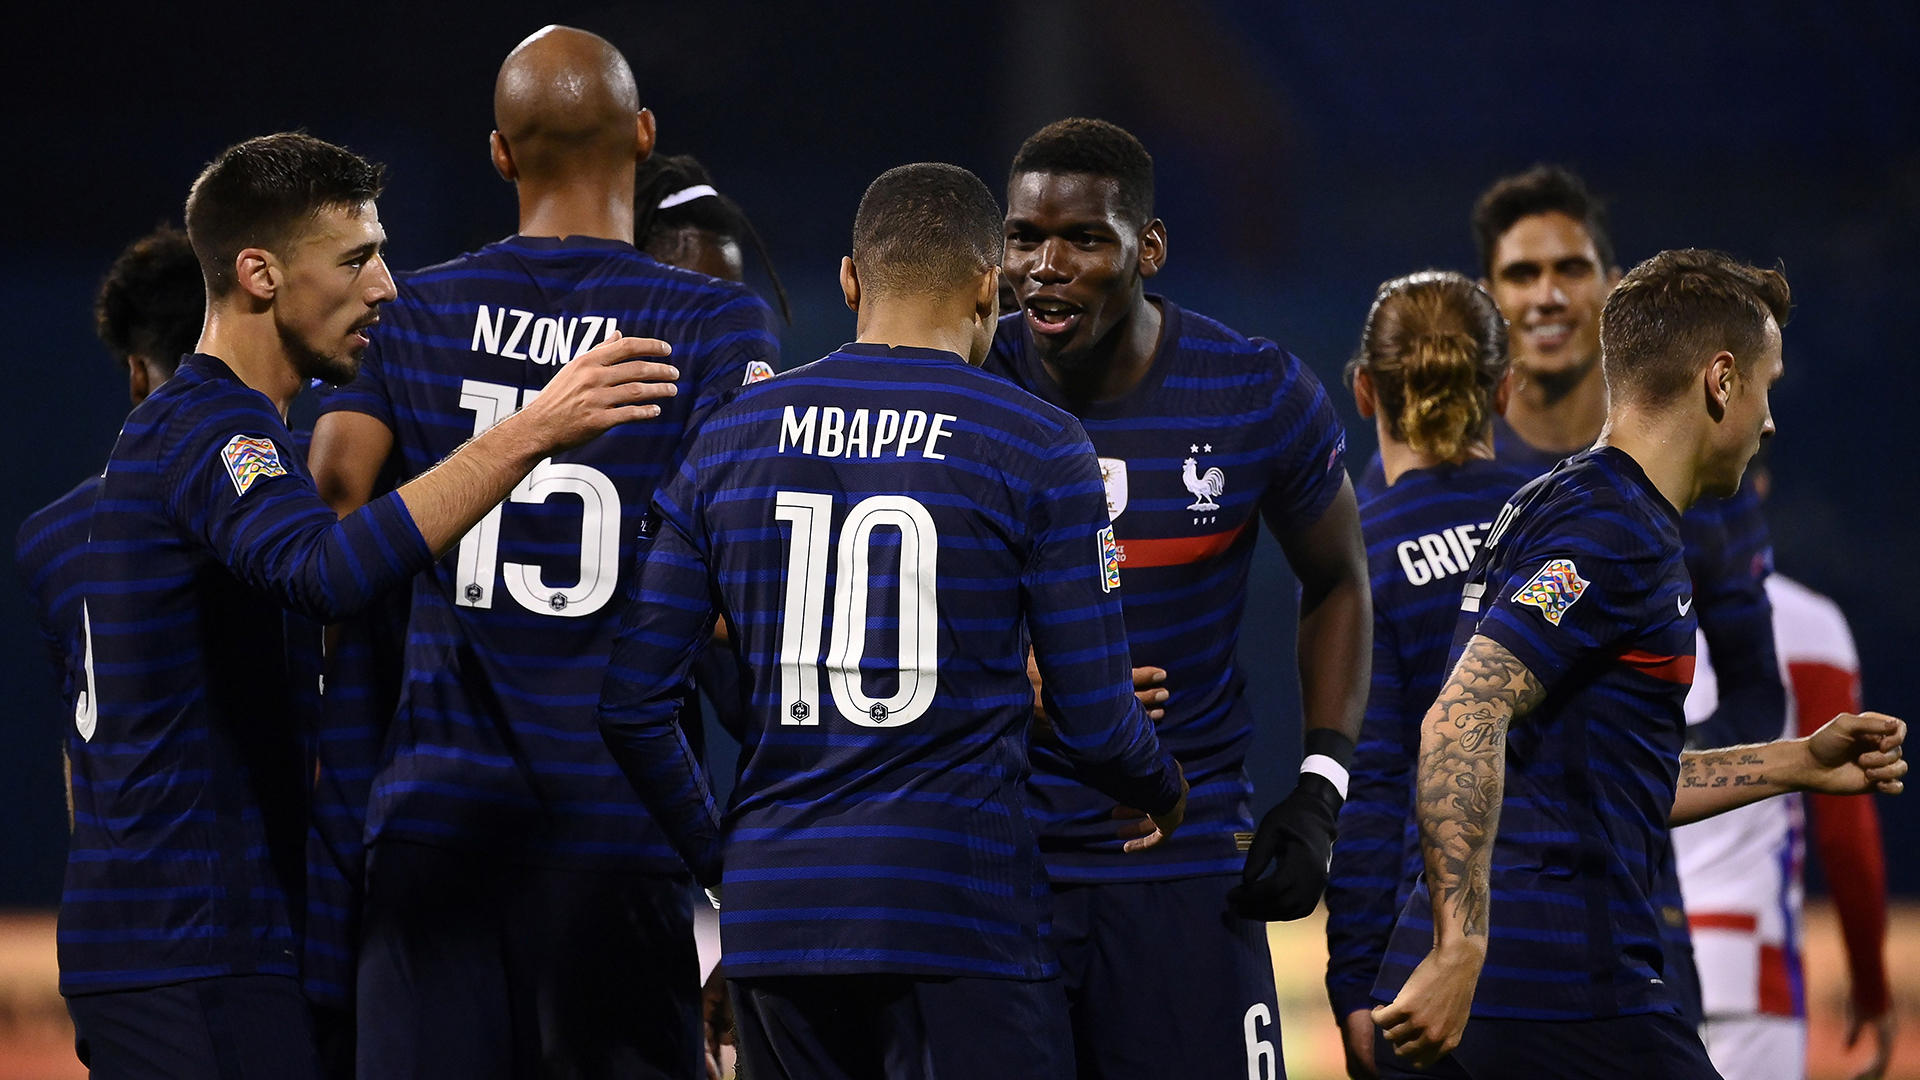 Classement FIFA - Le podium inchangé, la France (2e) comble son retard sur la Belgique